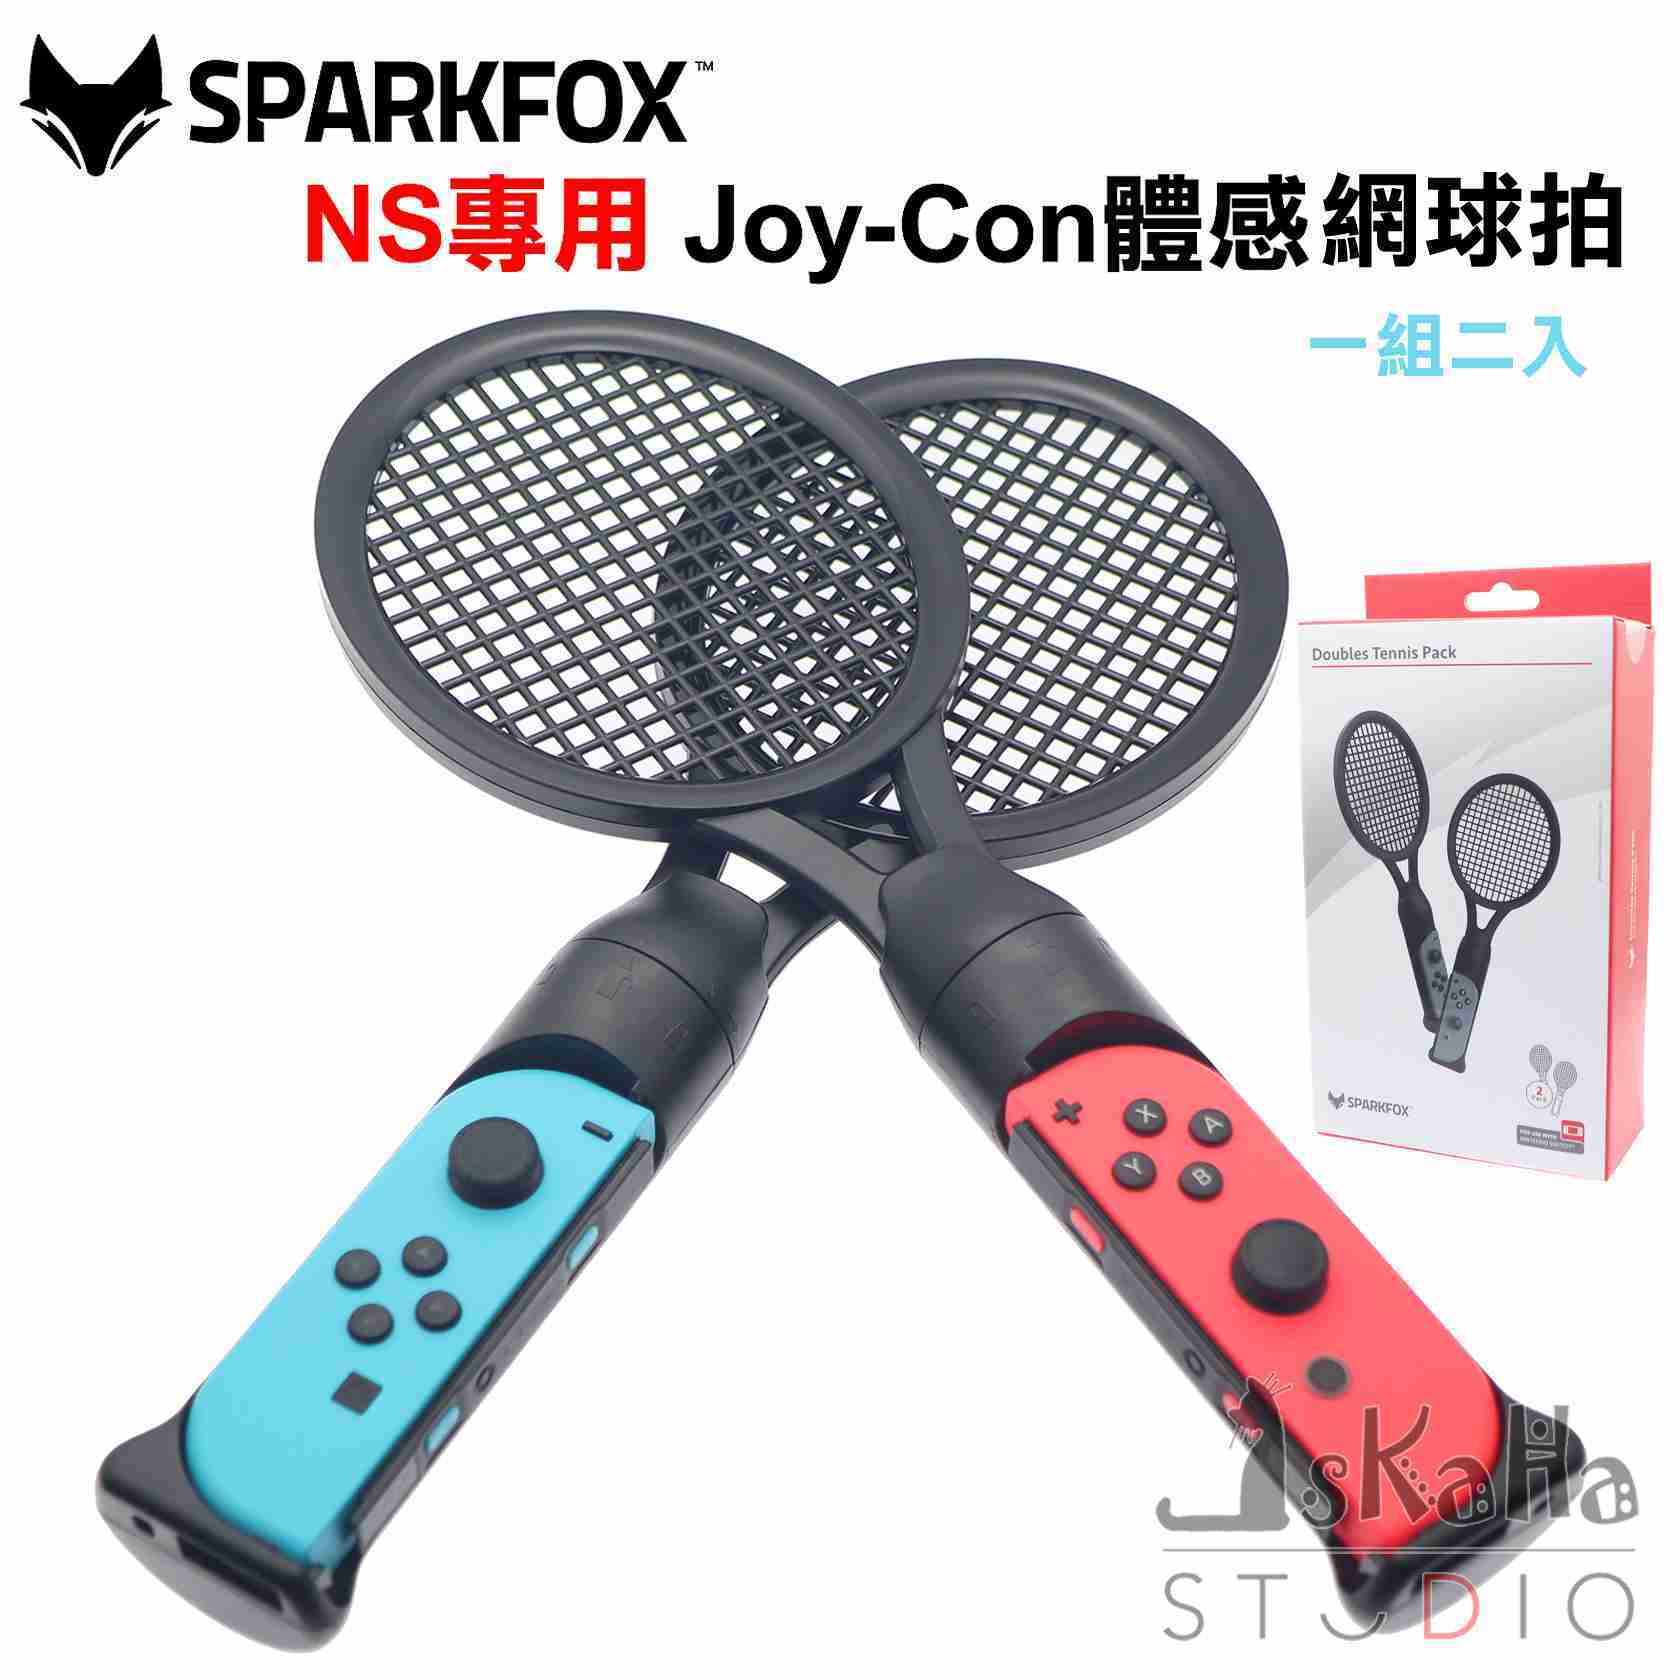 現貨 NS 體感網球拍 SPARKFOX Joy-Con握把 一組二入 瑪莉歐網球 閃狐 Switch